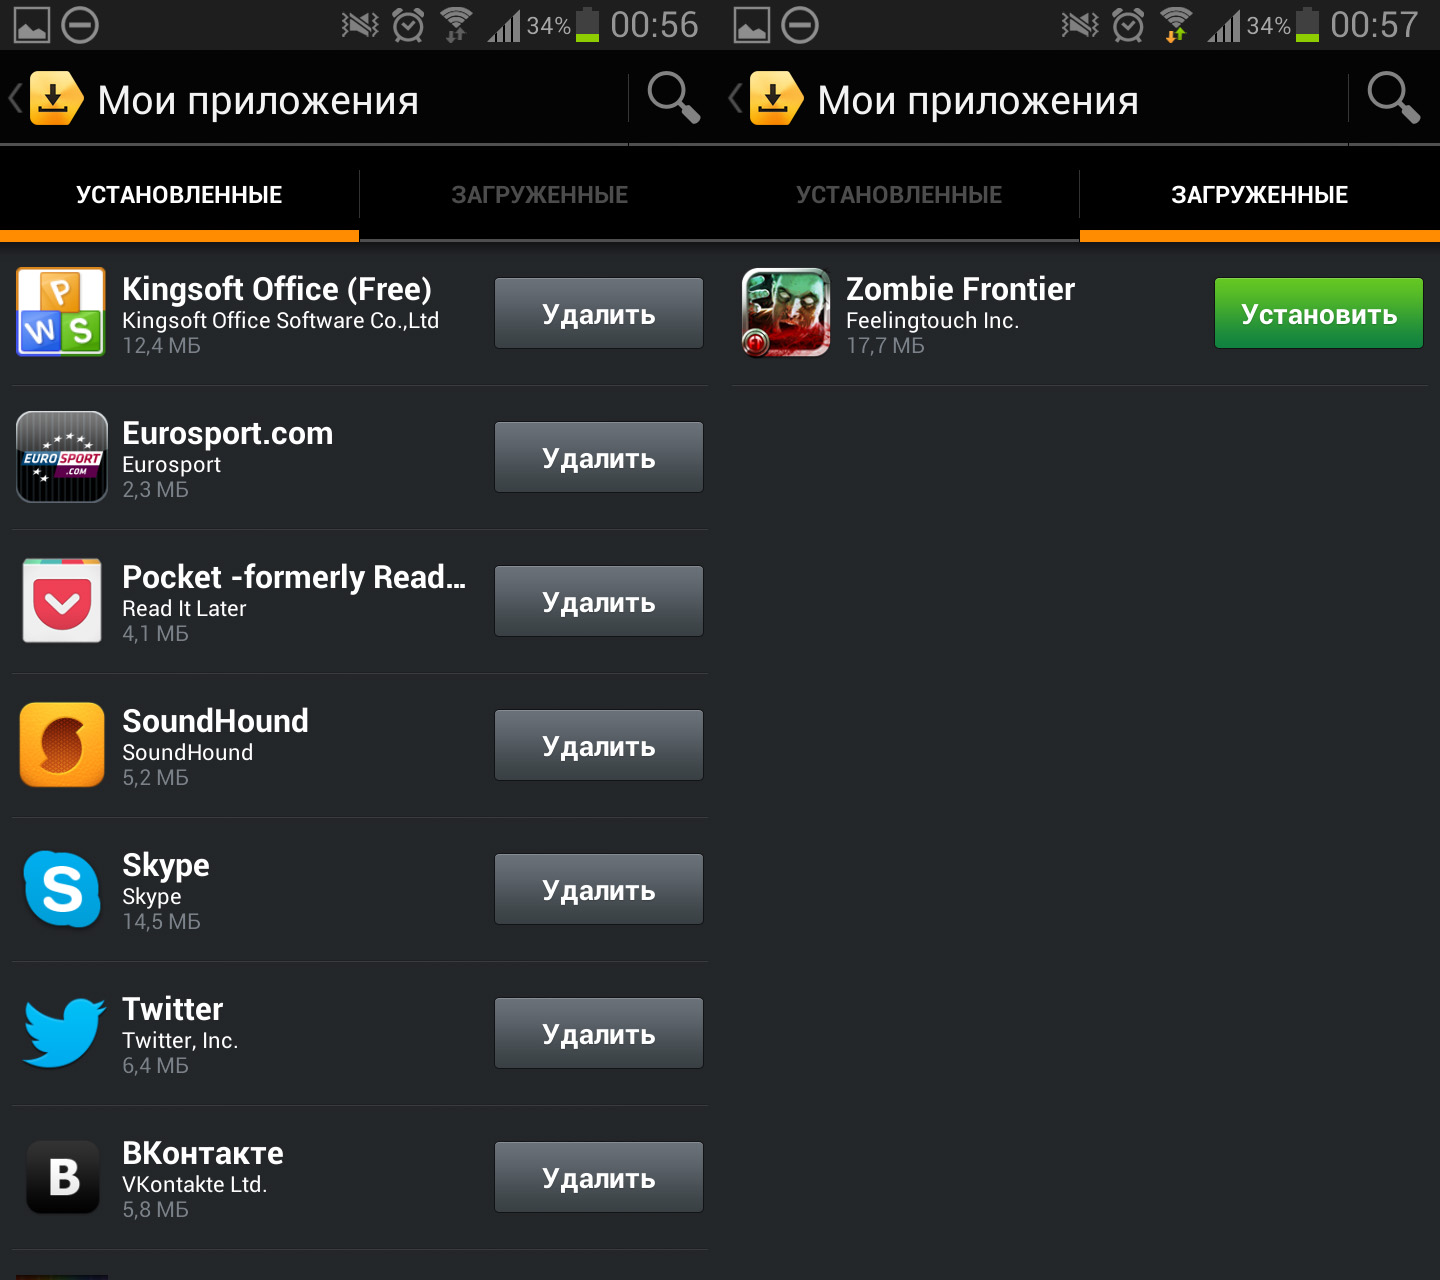 Аналог гугл плей для андроид в россии. Русский магазин приложений для андроид. Альтернативные магазины приложений для Android. Сторонний магазин приложений Android.